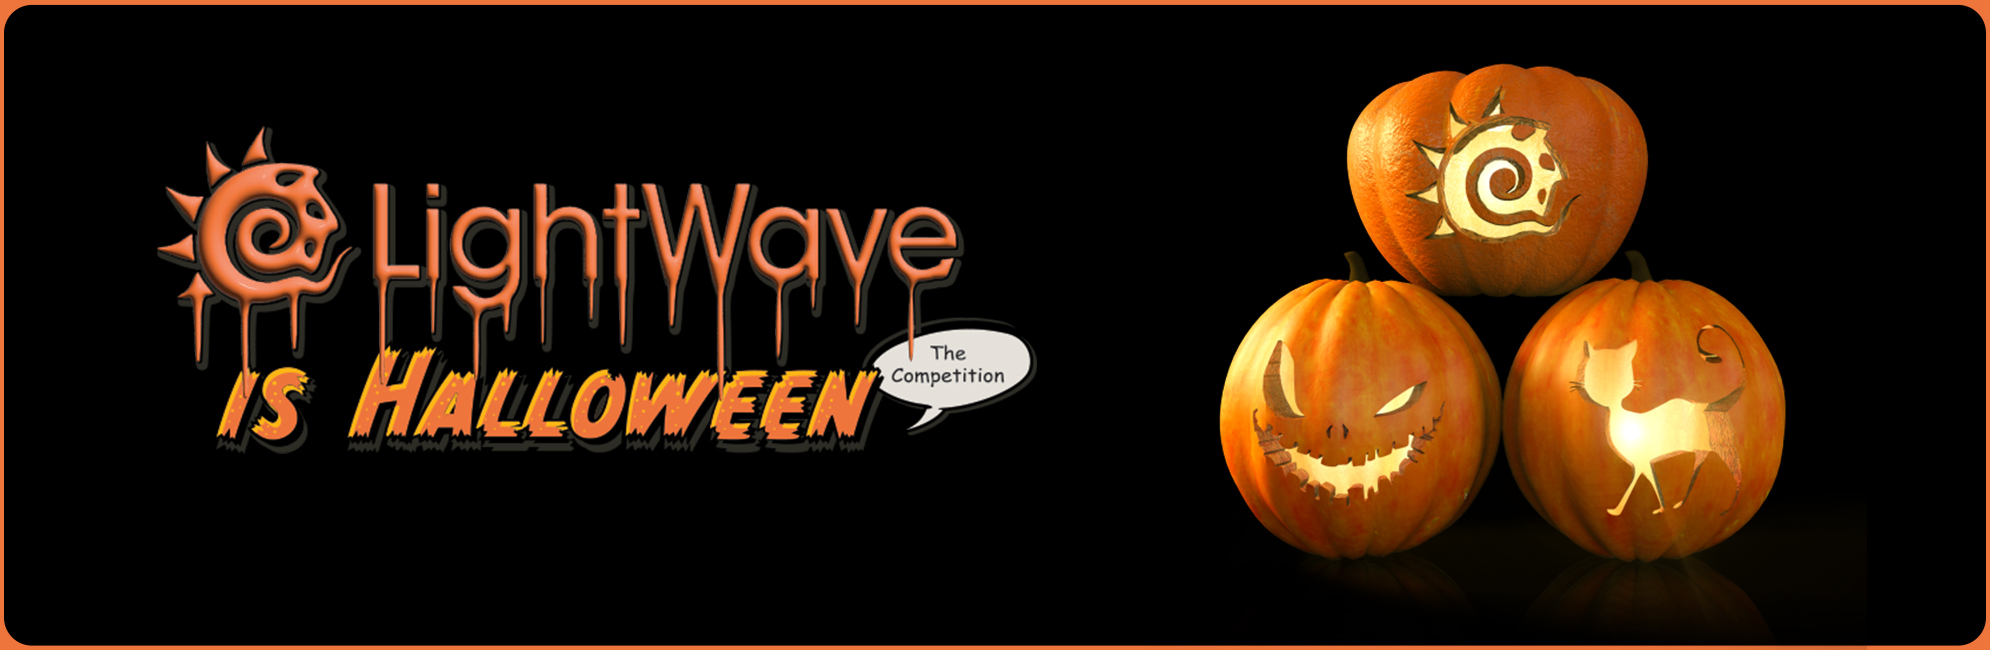 Nome: LightWave is Halloween  LightWave 3D Promo 20320918.jpg
Visite: 88
Dimensione: 387.4 KB